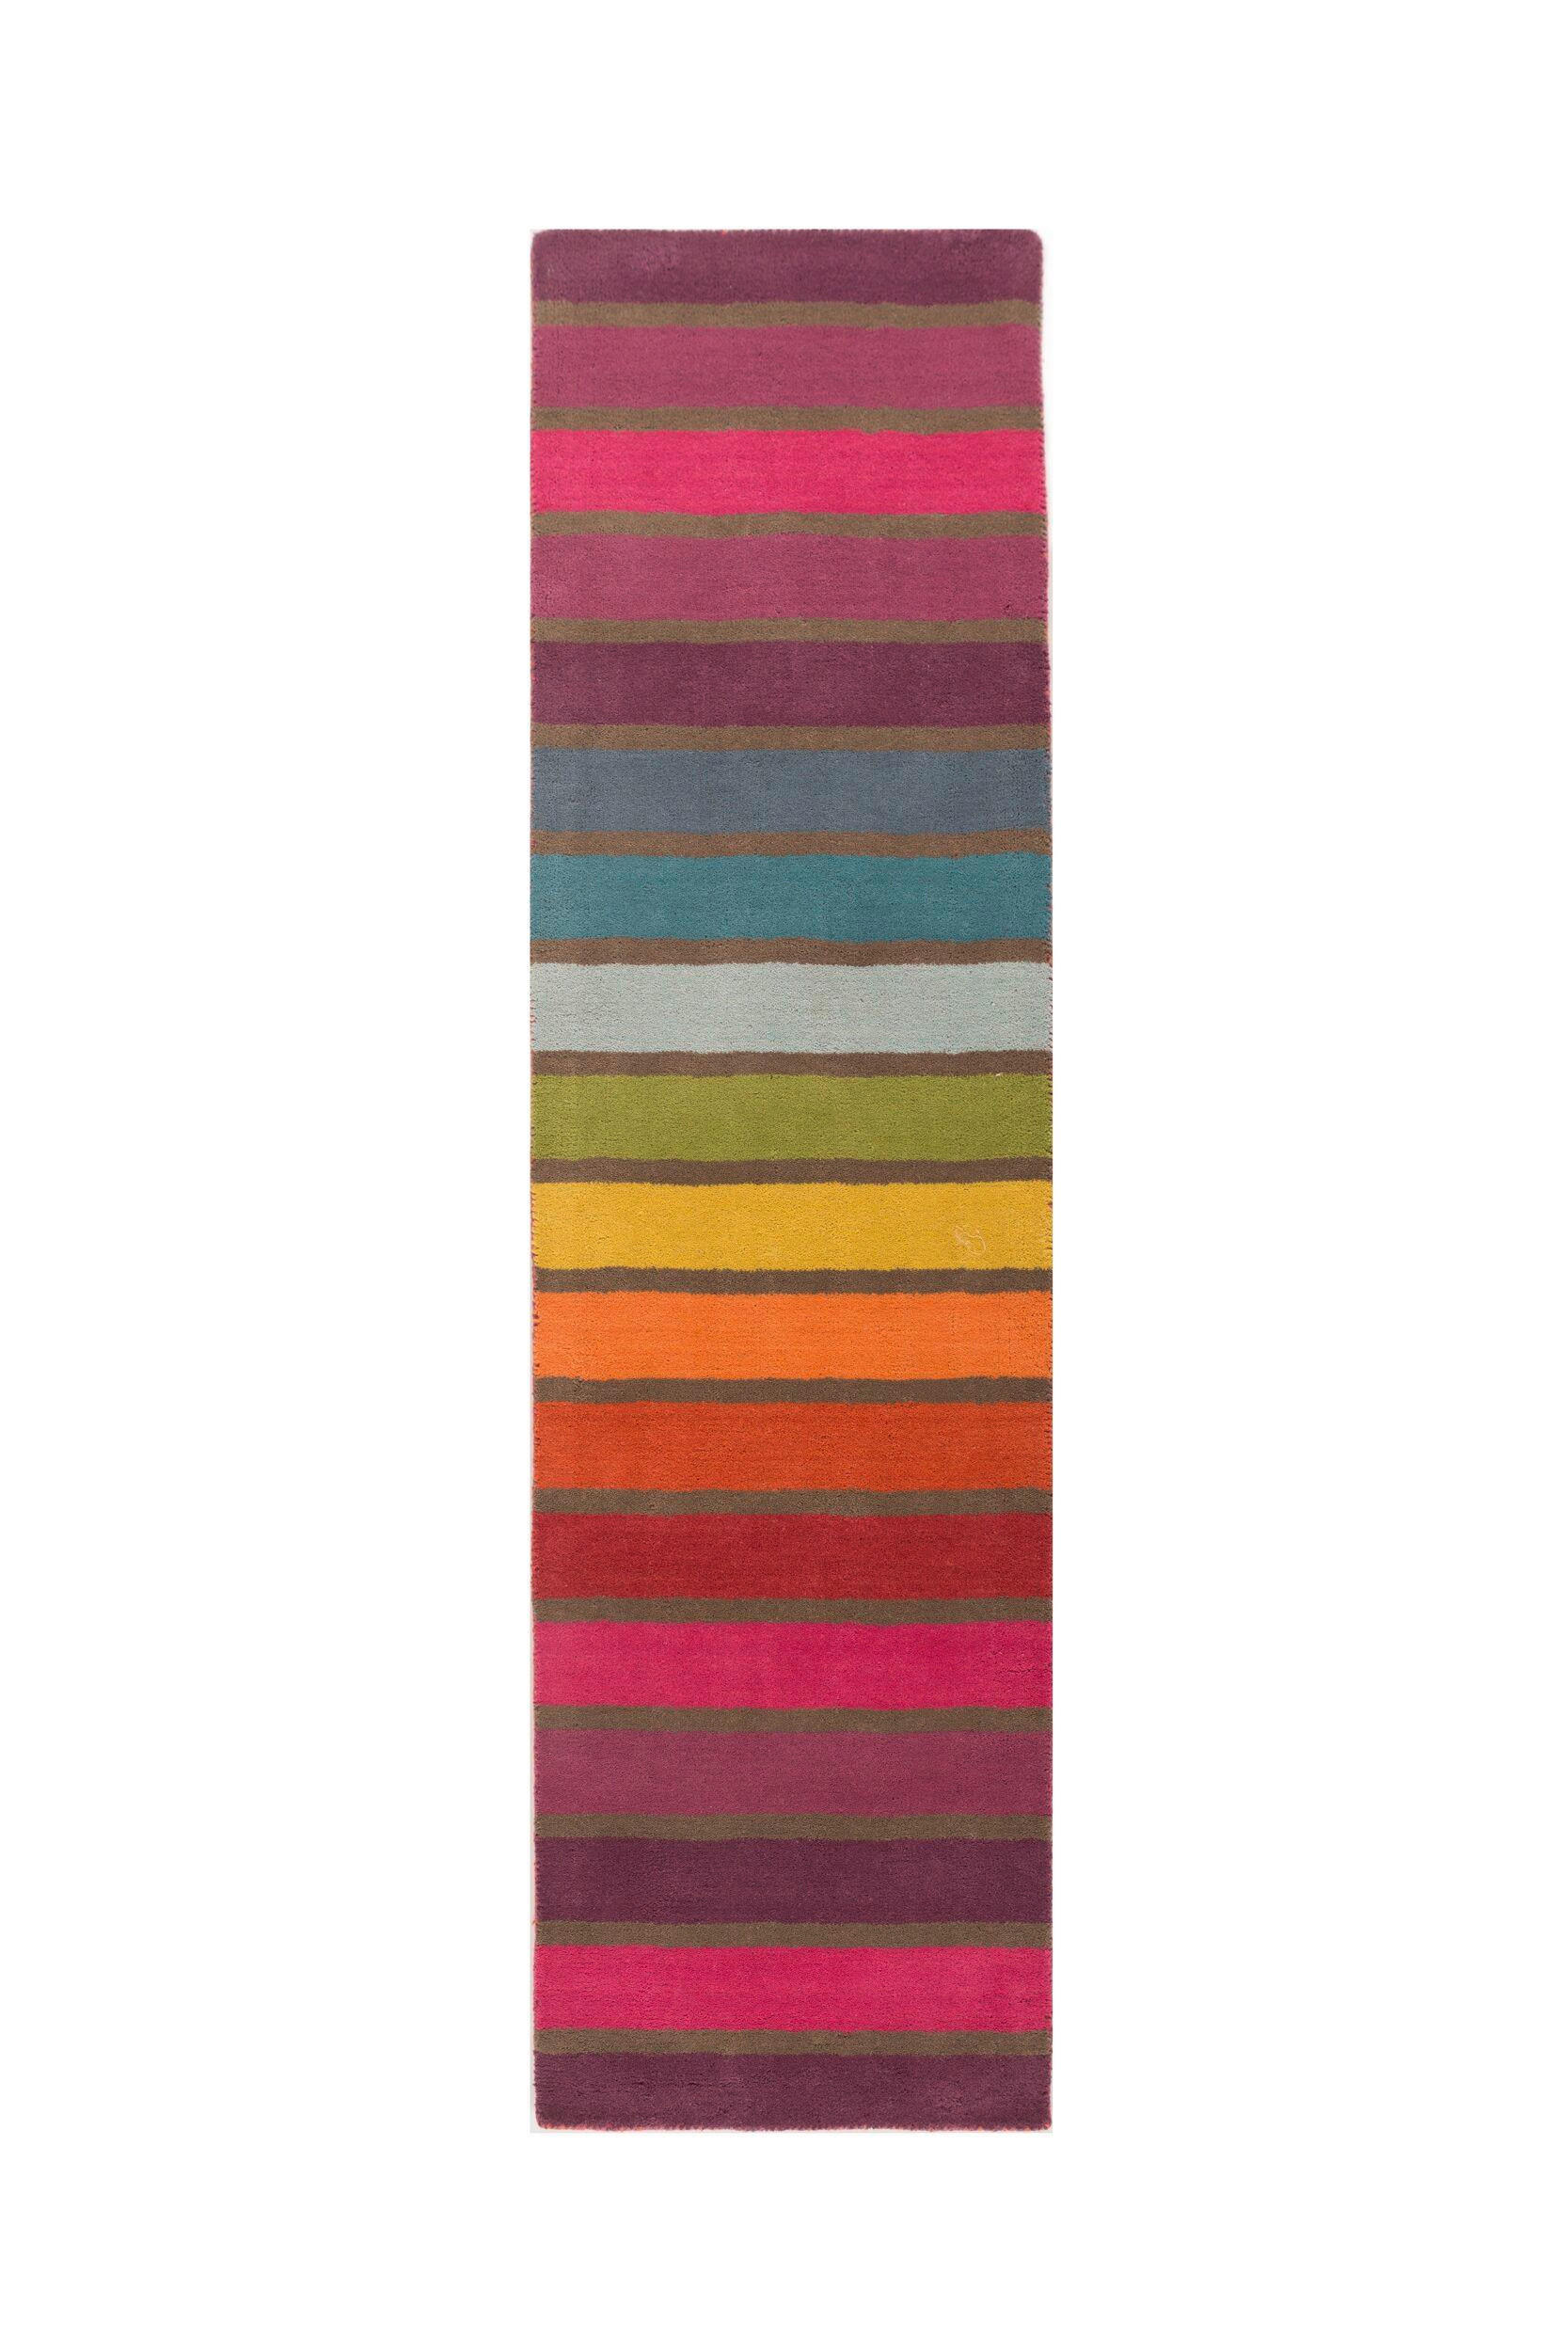 VLNĚNÝ KOBEREC, 230/60 cm, vícebarevná - vícebarevná - textil